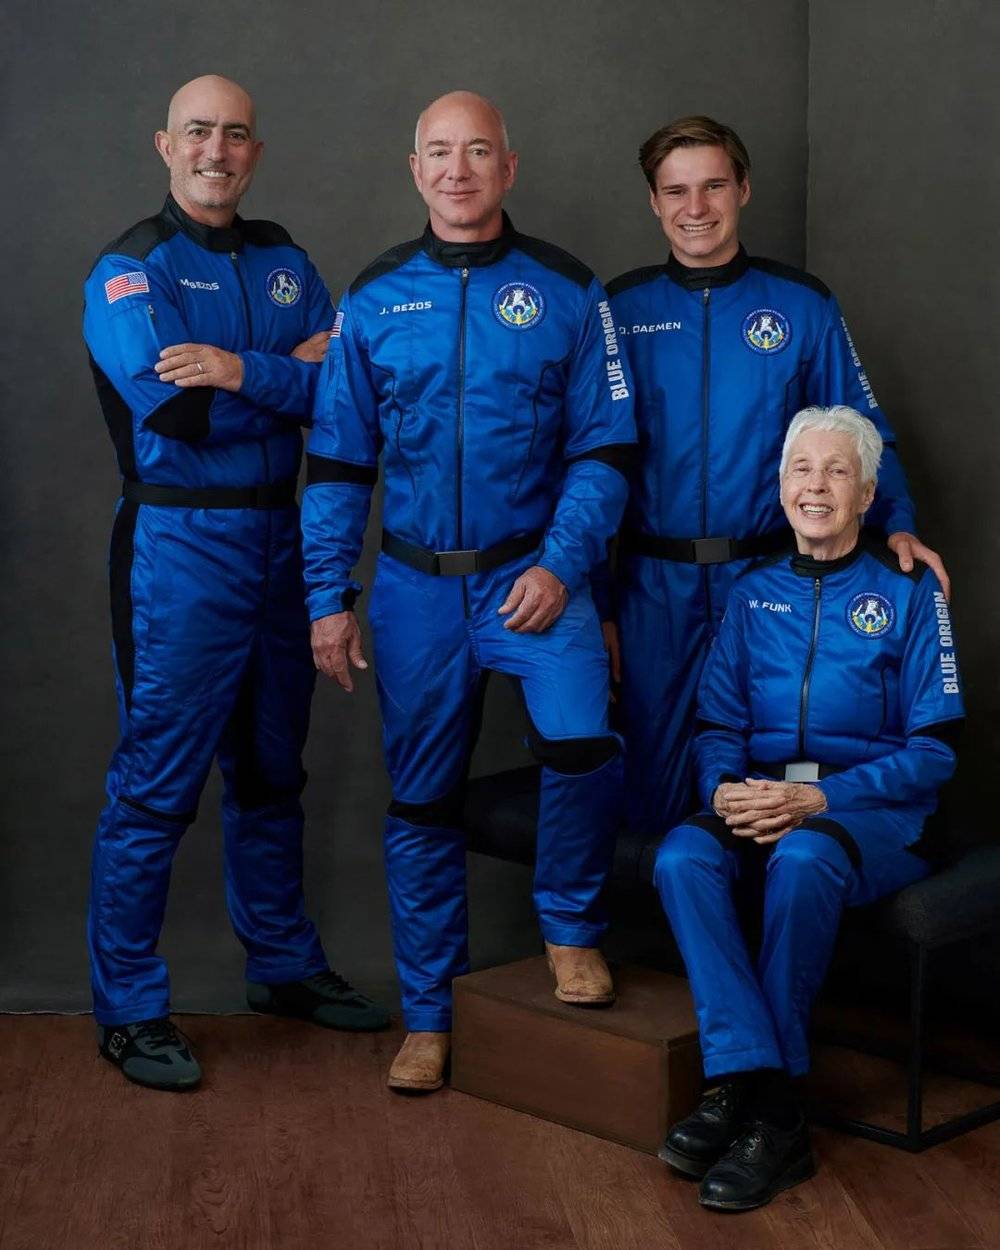 贝索斯（左二）和一起太空旅行的宇航员，左一是贝索斯的弟弟，另外两个是18岁的青年戴曼和82岁的芬克。贝索斯搭乘的火箭是自己公司蓝色起源的火箭“新谢泼德号”（New Shepard），该火箭当天从美国得克萨斯州发射，触达106公里的太空。贝索斯的旅行打破了过去最年长和最年轻的宇航纪录，也是世界首富第一次太空旅行。然而，由于只是刚刚进入太空几分钟就回来，贝索斯遭到了马斯克的嘲笑。图片来源：视觉中国